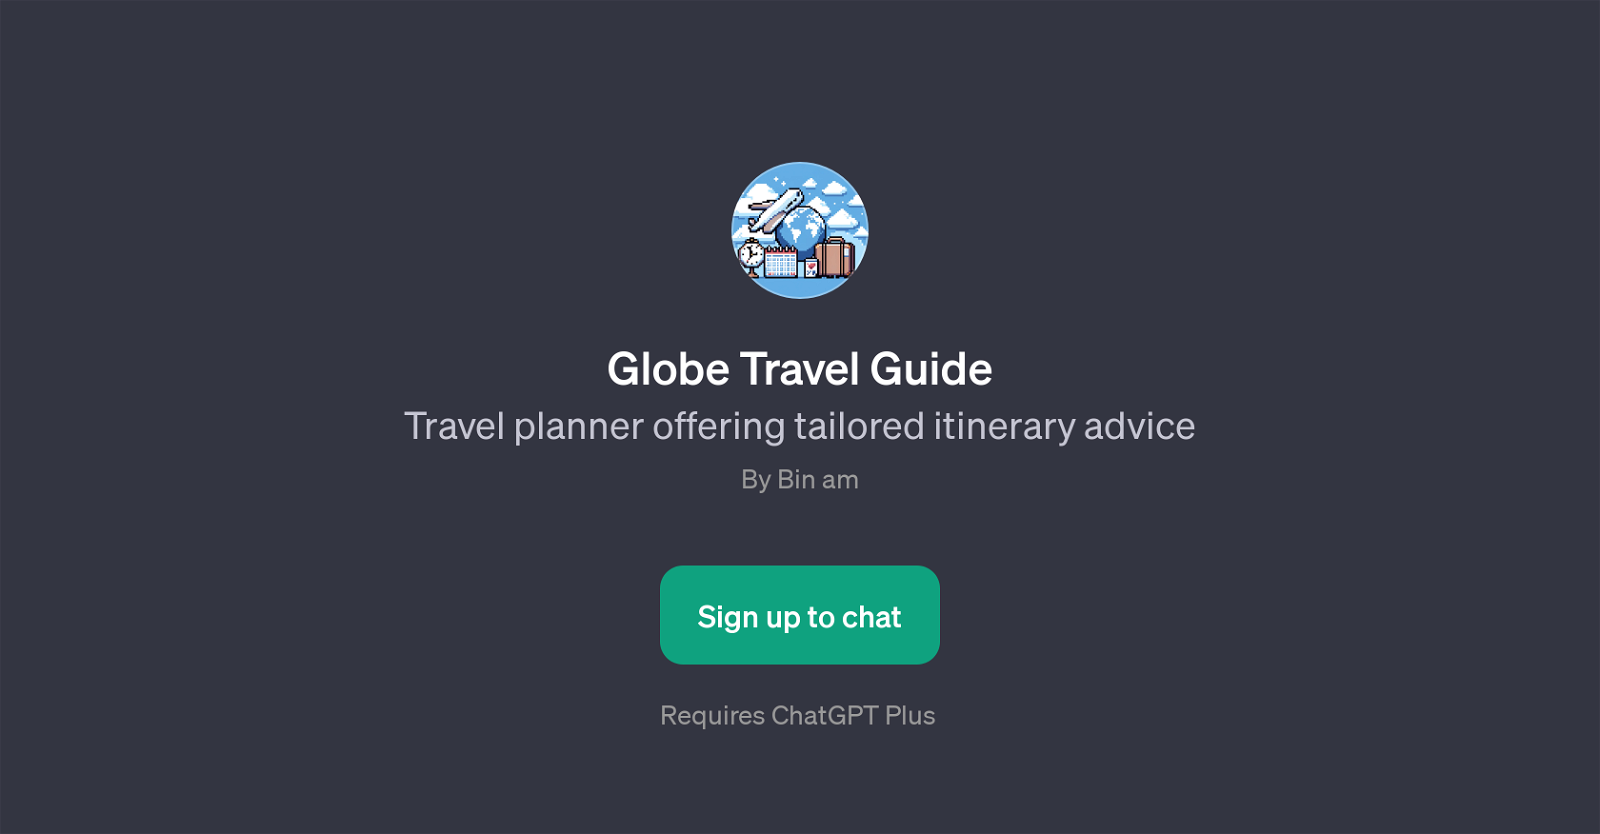 Globe Travel Guide website